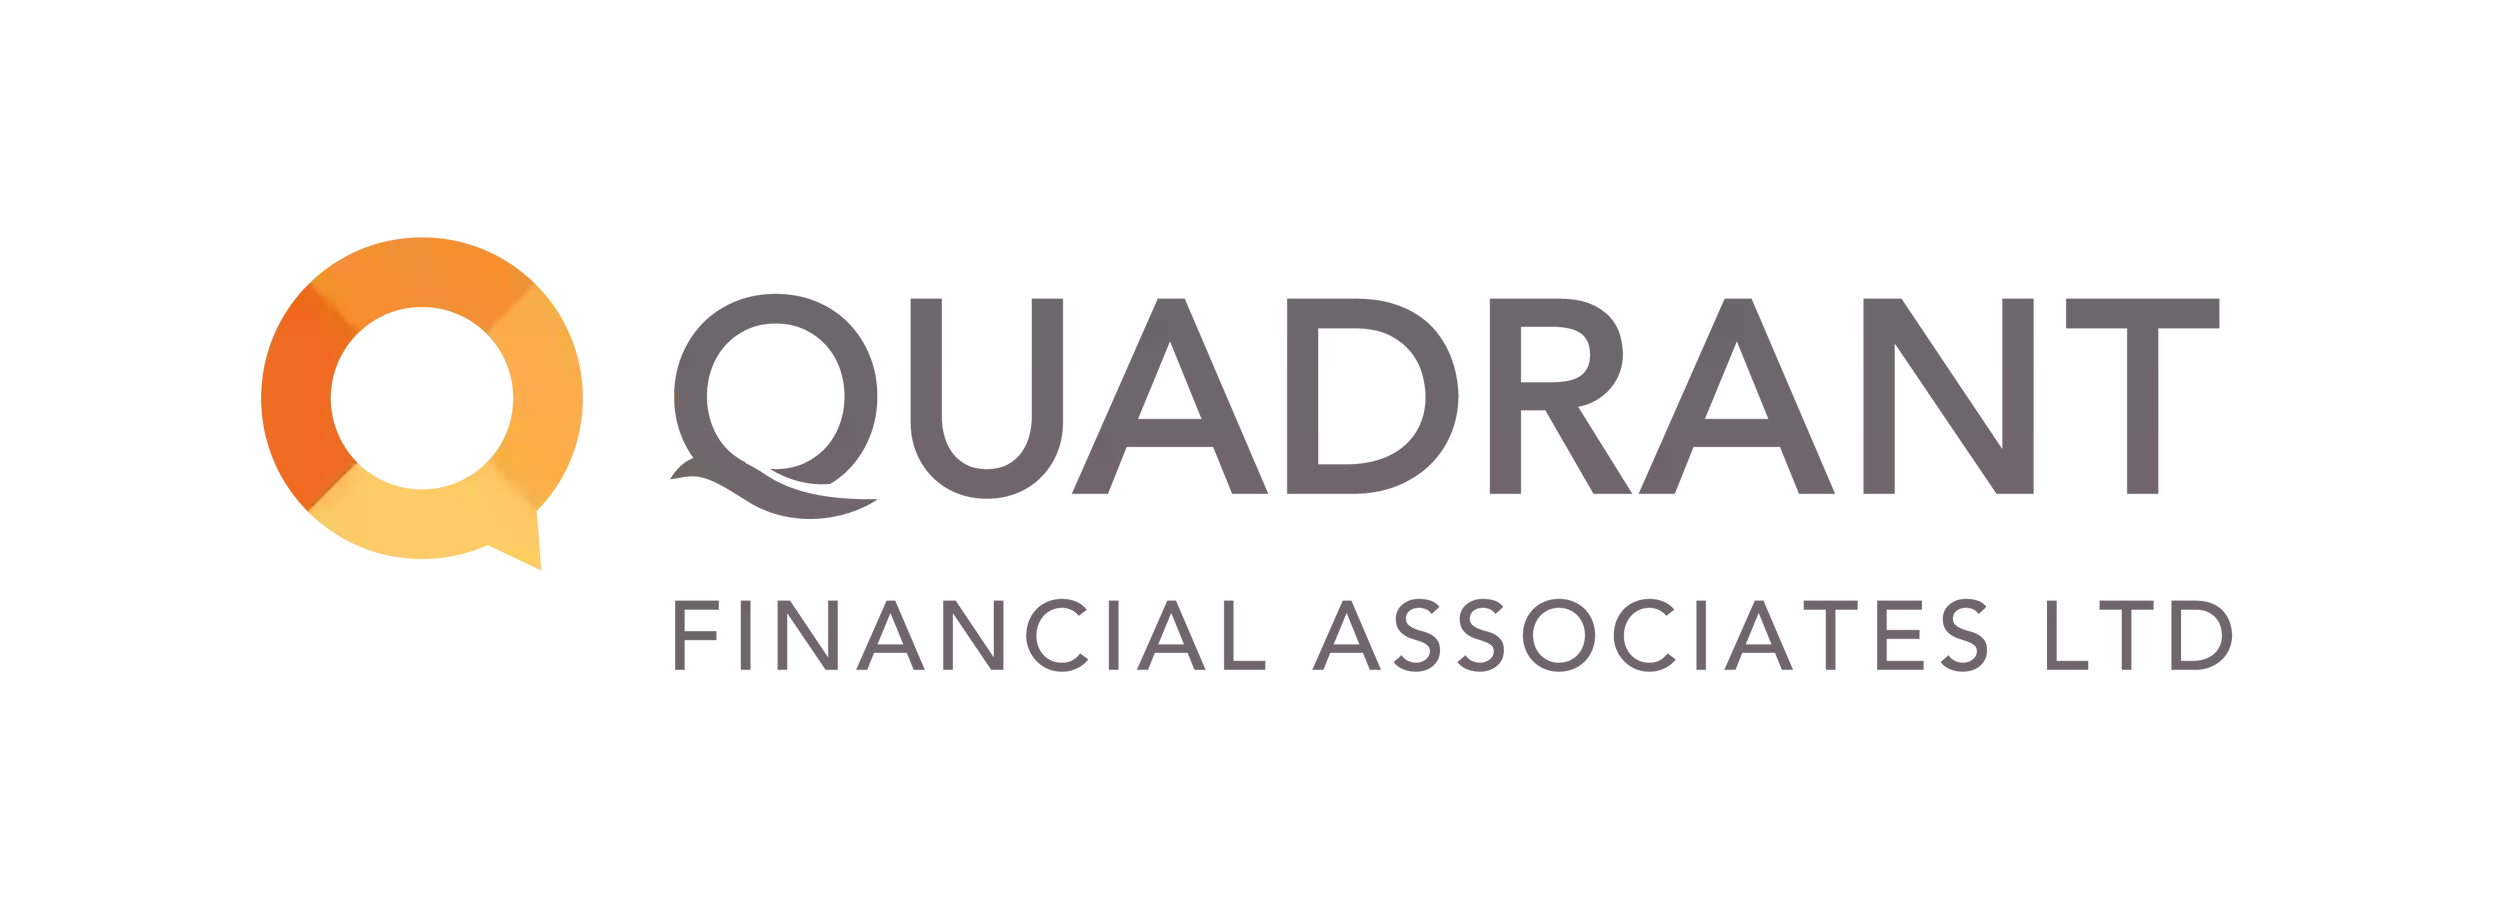 Quadrant Financial Associates Ltd